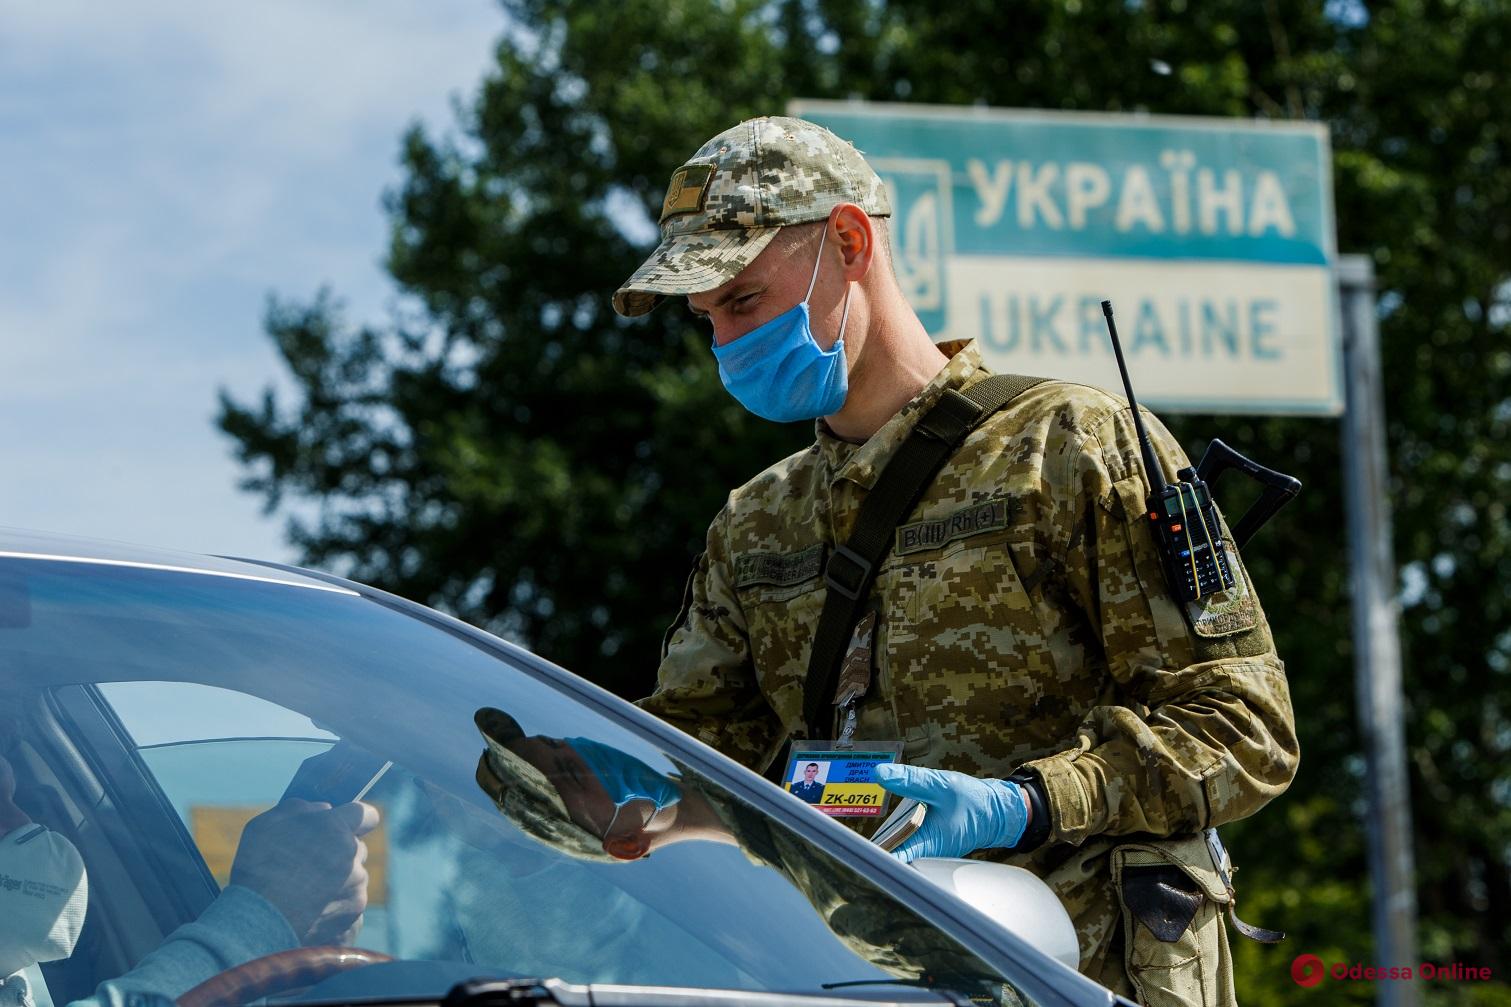 Коронавирус: в Украину временно ограничили въезд иностранцев